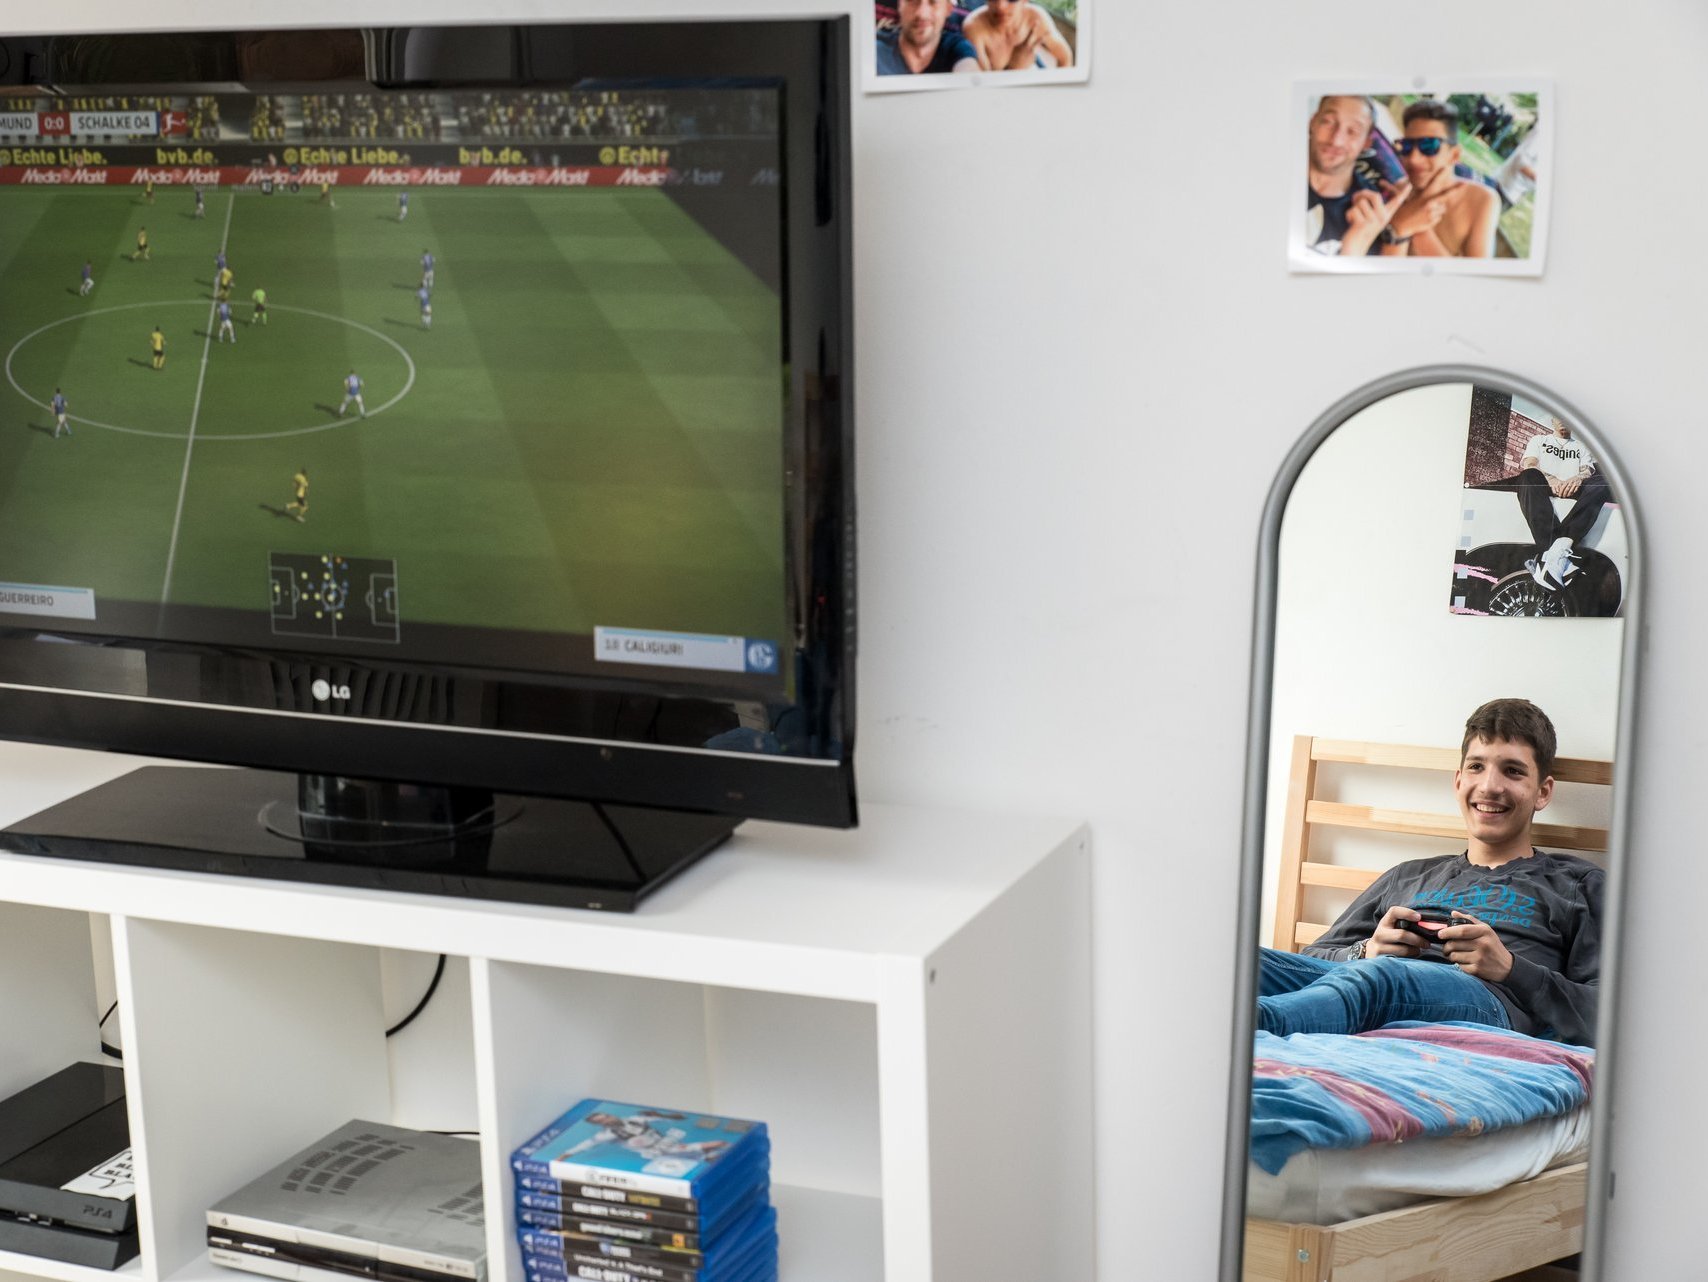 Bildperspektive zeigt gleichzeitig den TV mit Computer-Fussballspiel und im Spiegel daneben ist der Junge zu sehen, der den Controller hält